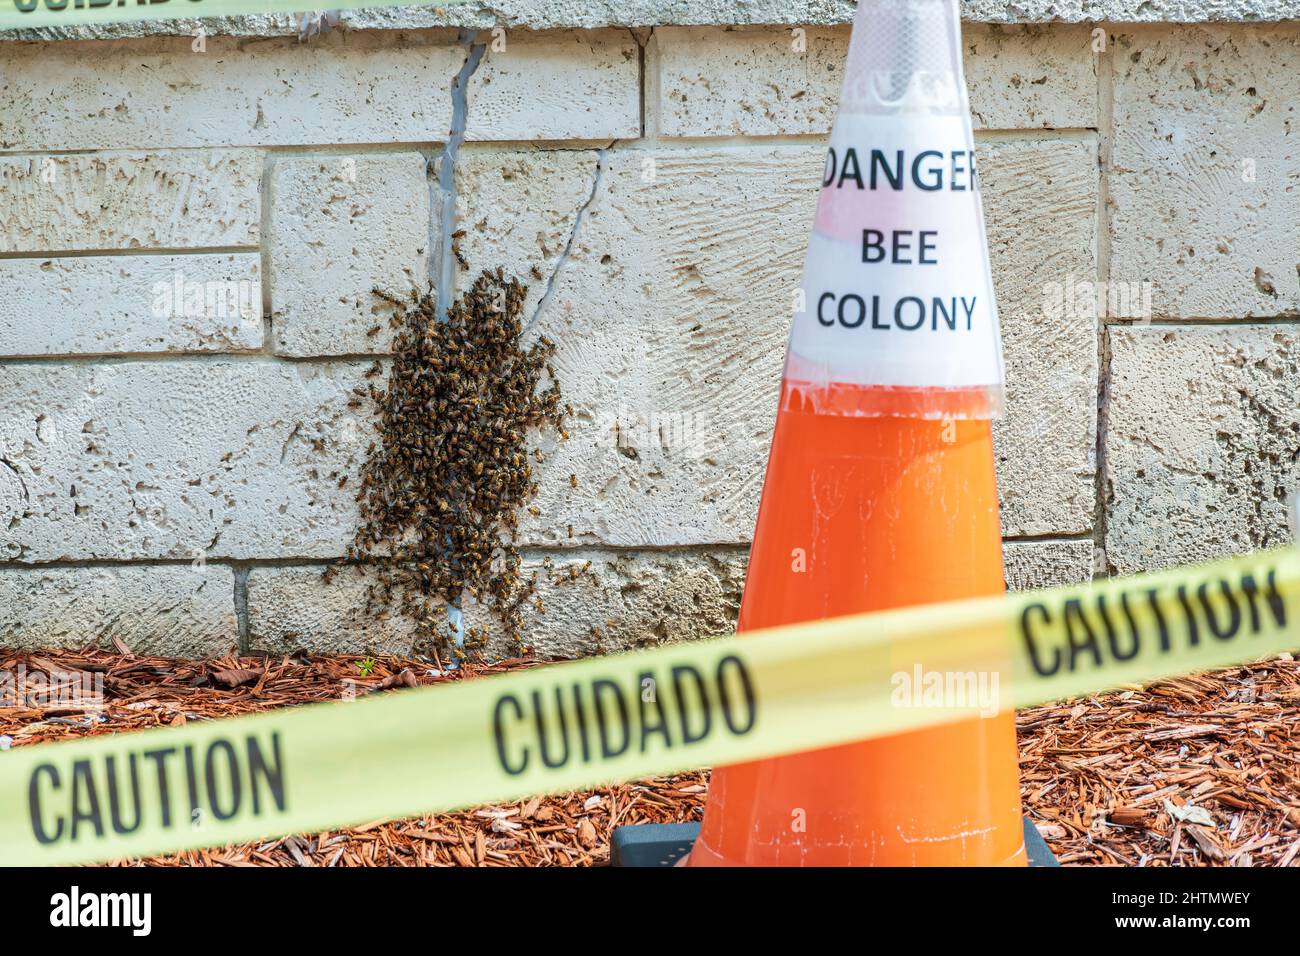 Cinta de precaución y cono de naranja delante de la colonia de abejas melíferas occidentales (Apis mellifera) - Hollywood, Florida, Estados Unidos Foto de stock